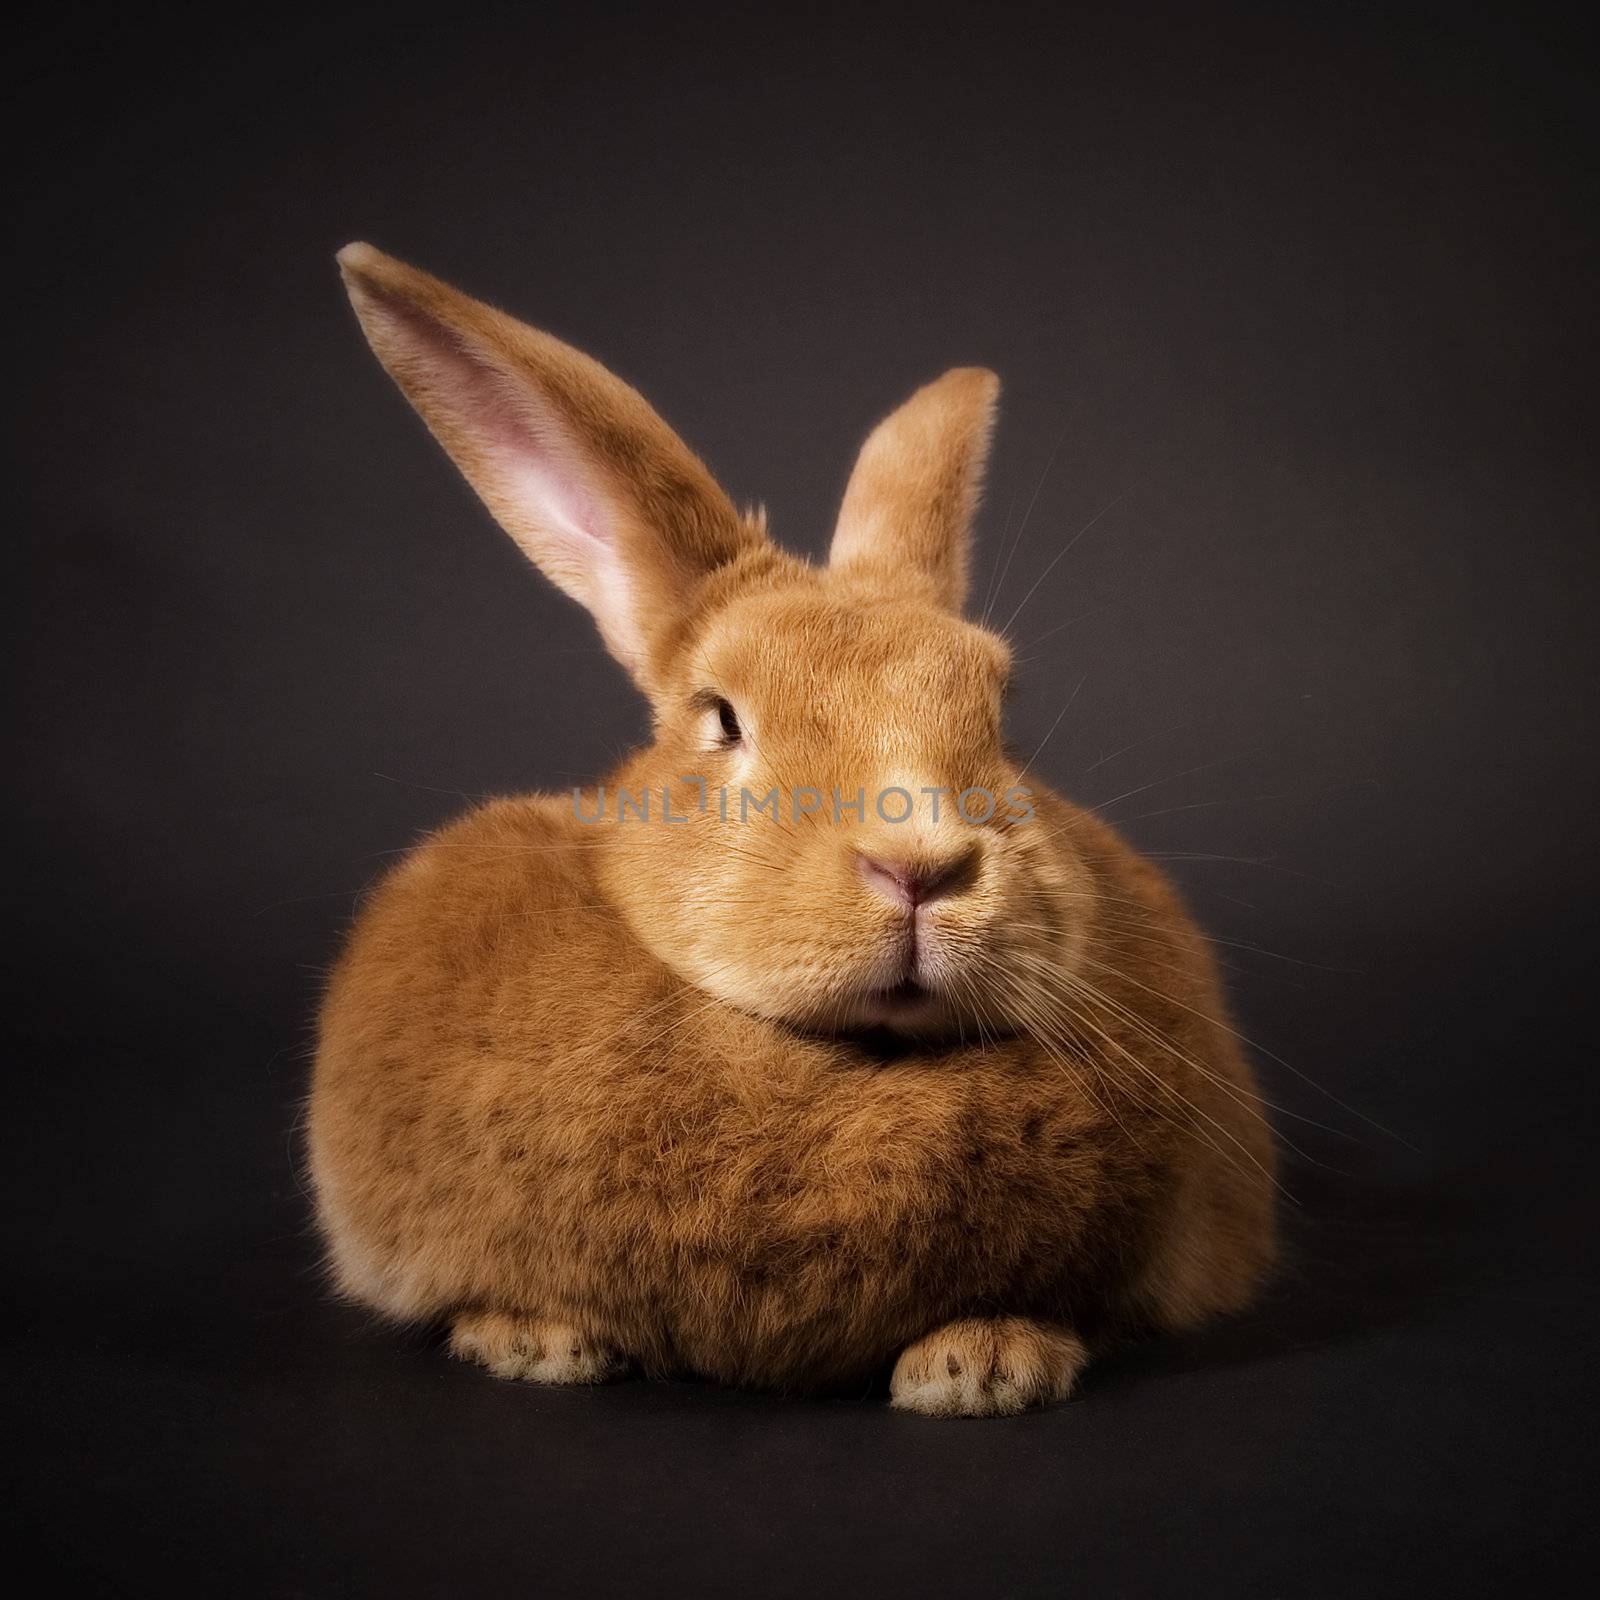 Rabbit by stefan_andronache